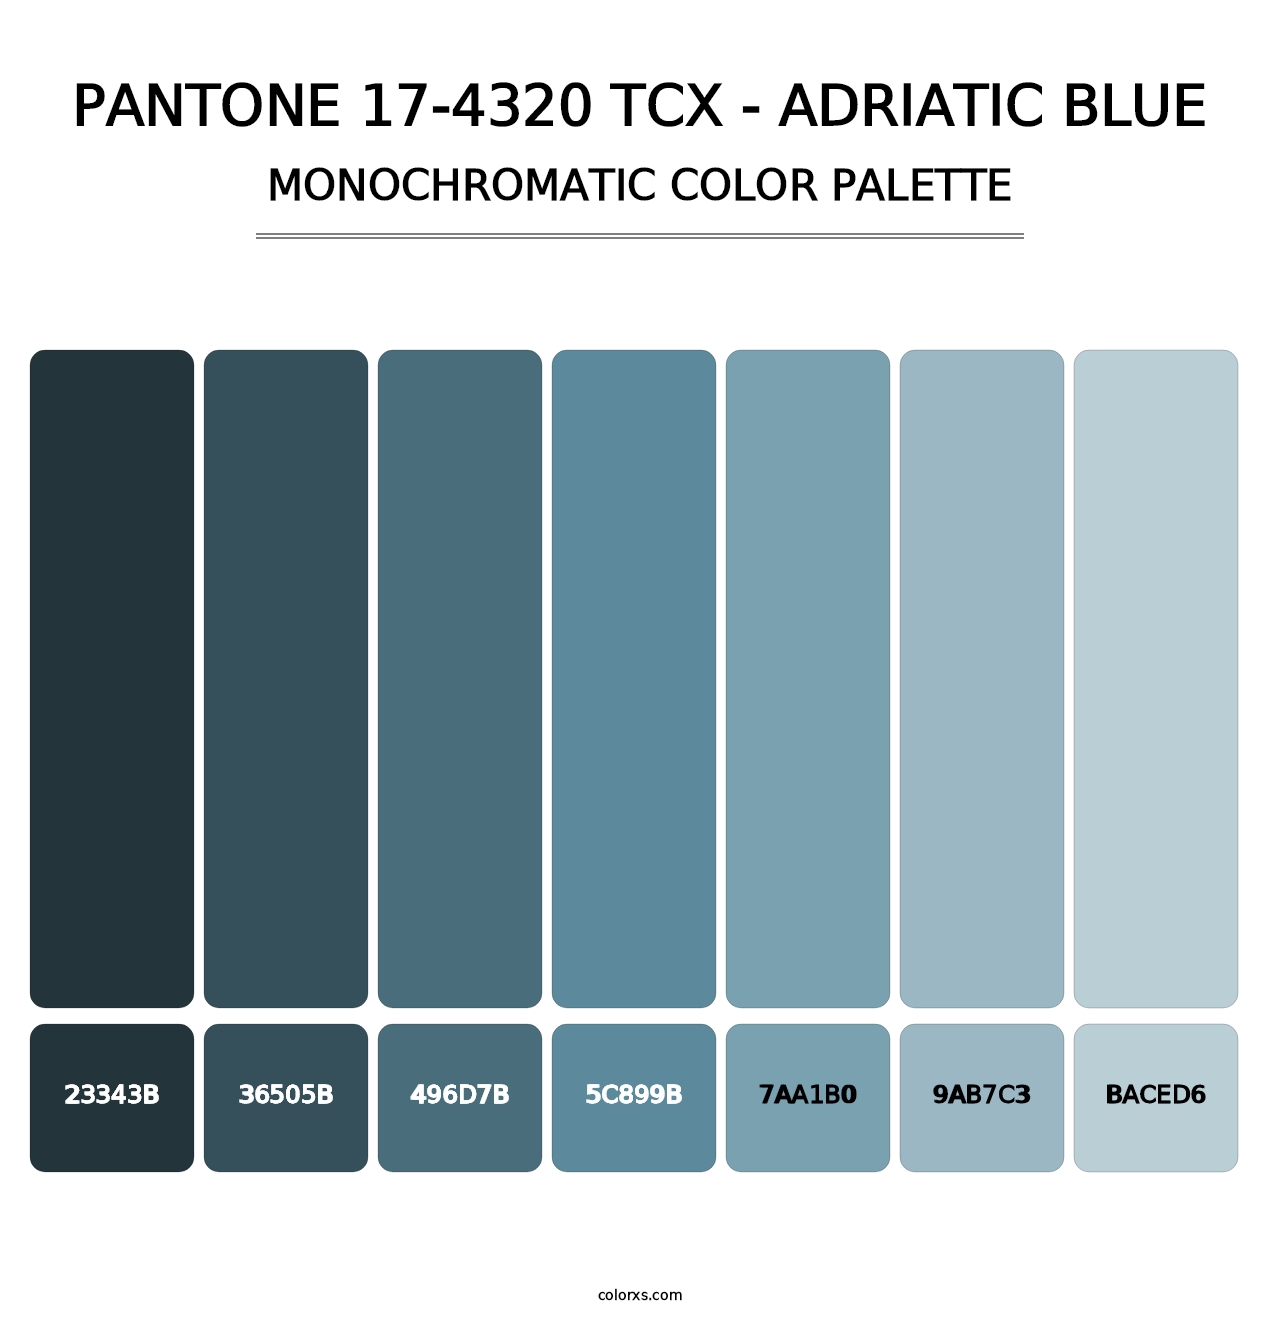 PANTONE 17-4320 TCX - Adriatic Blue - Monochromatic Color Palette